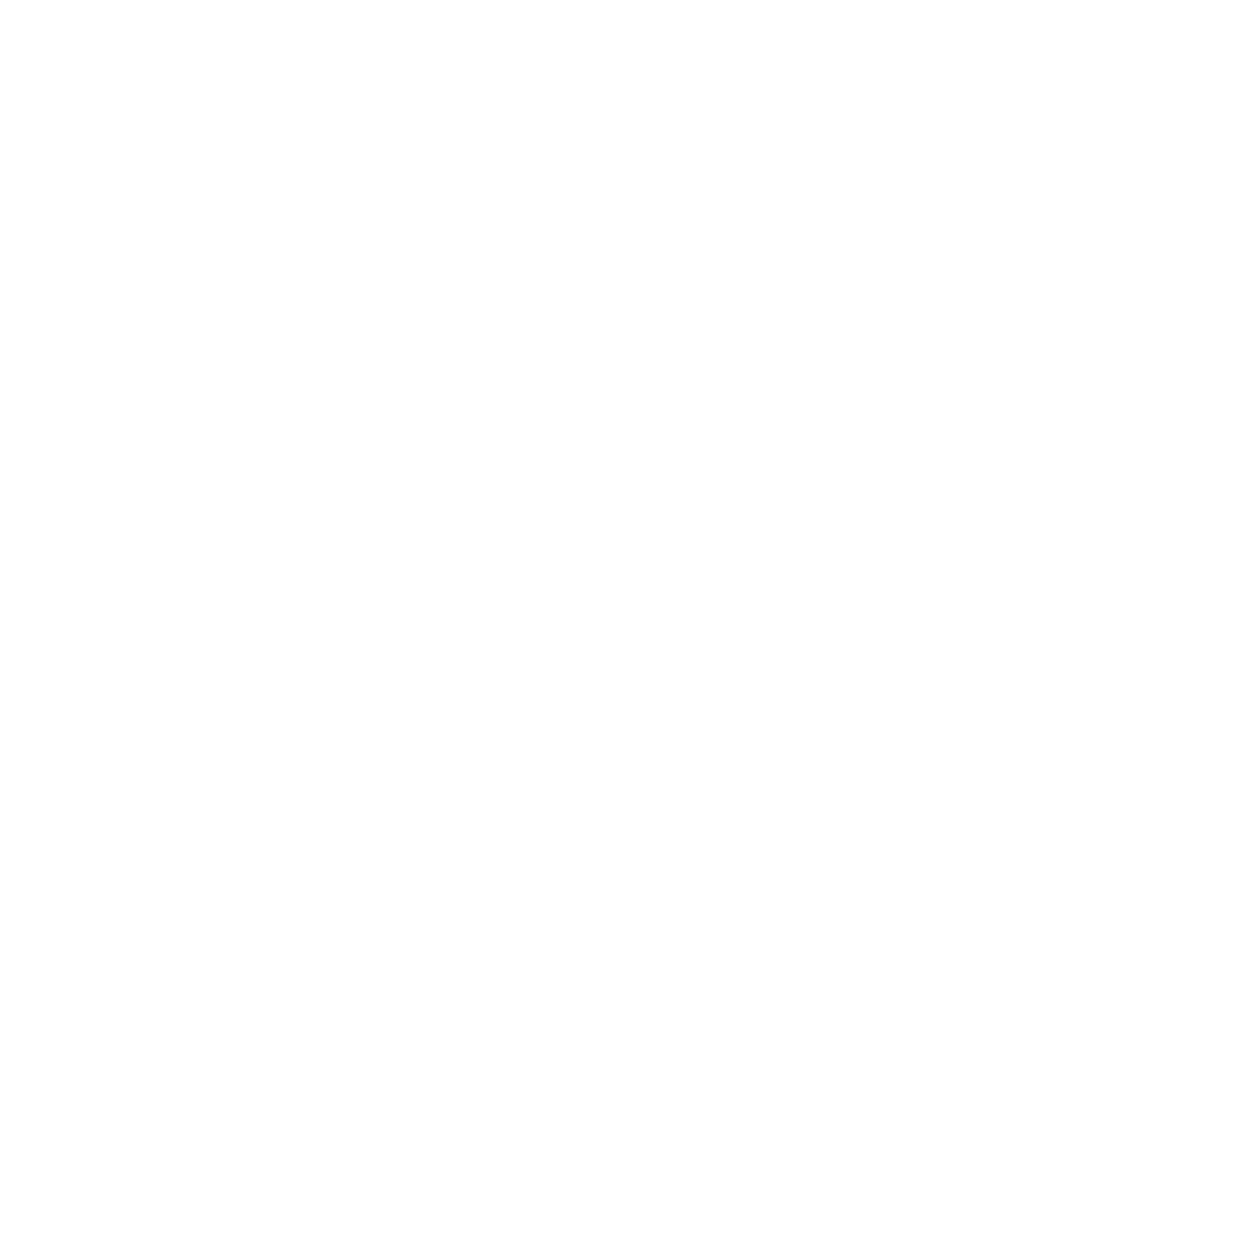 Stay SA Historic